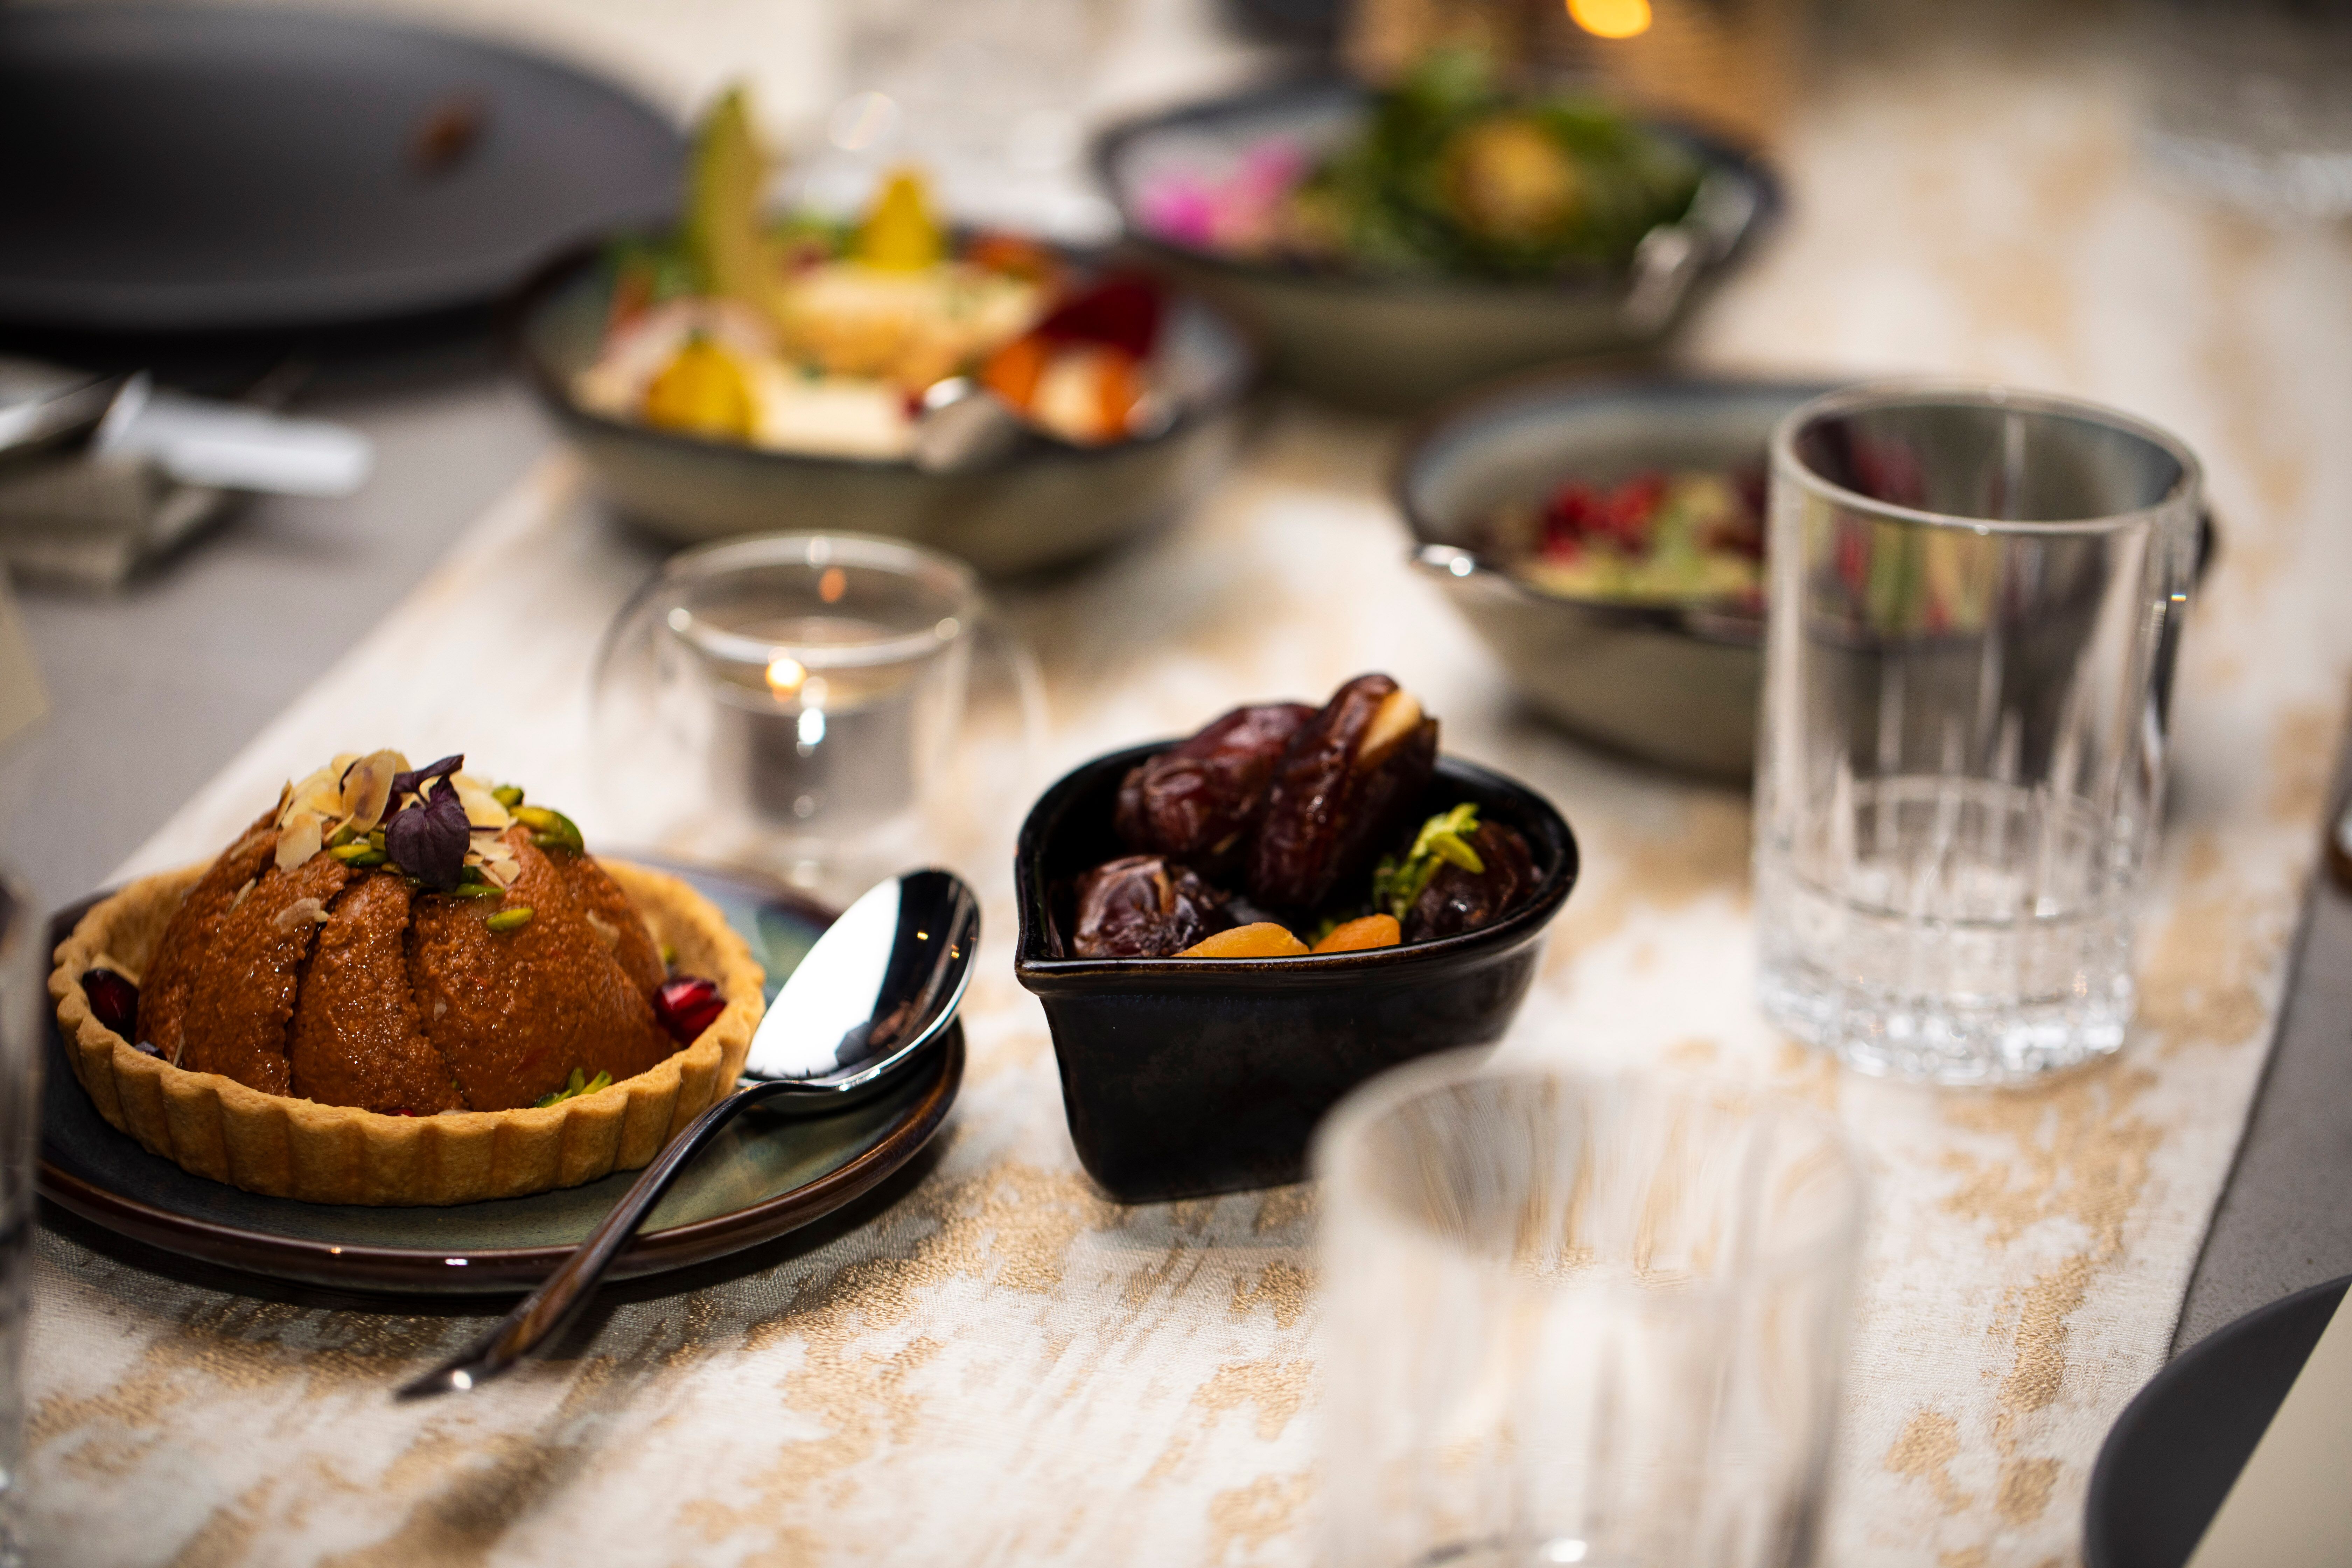 مطعم شيفال يحتفي بشهر رمضان المبارك بعروض طعام مميزة